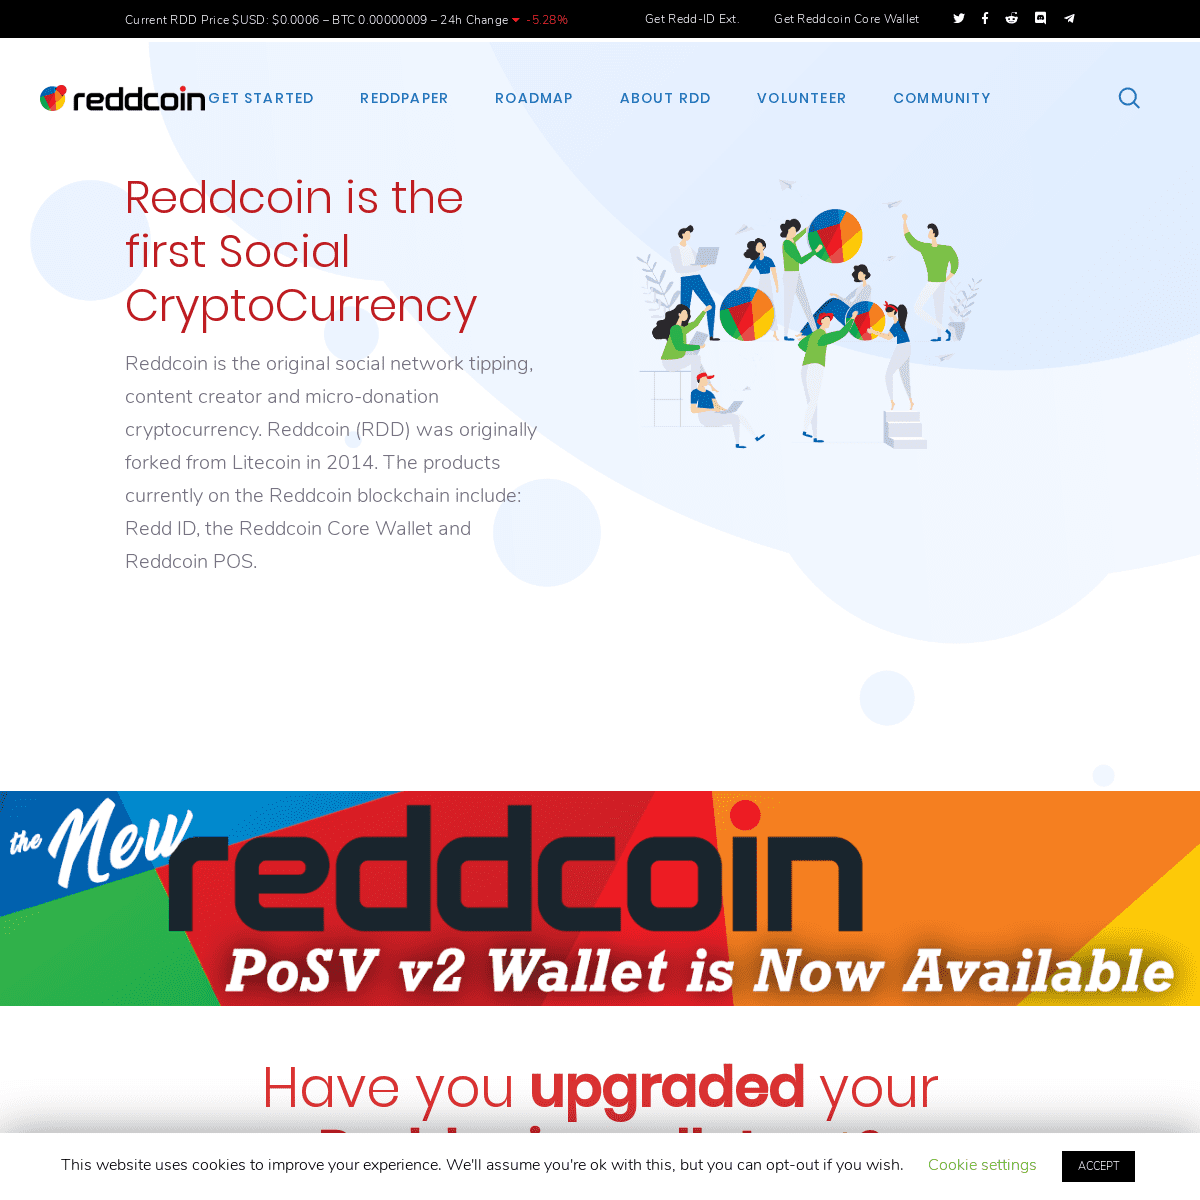 A complete backup of reddcoin.com